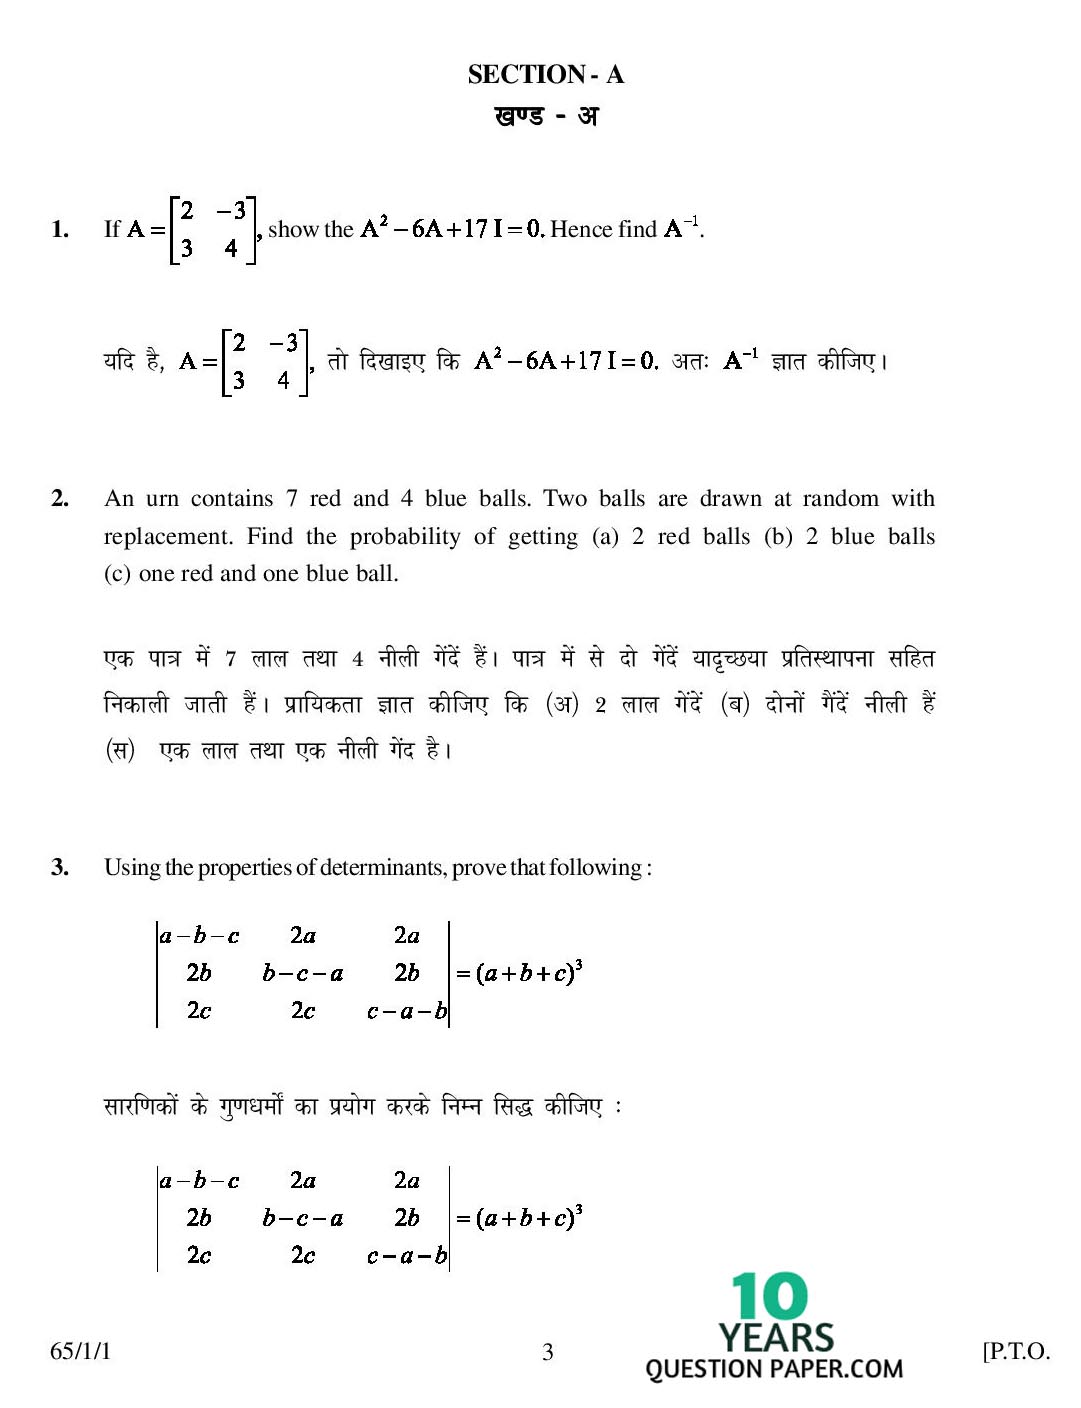 CBSE Class 12 Mathematics 2007 Question Paper